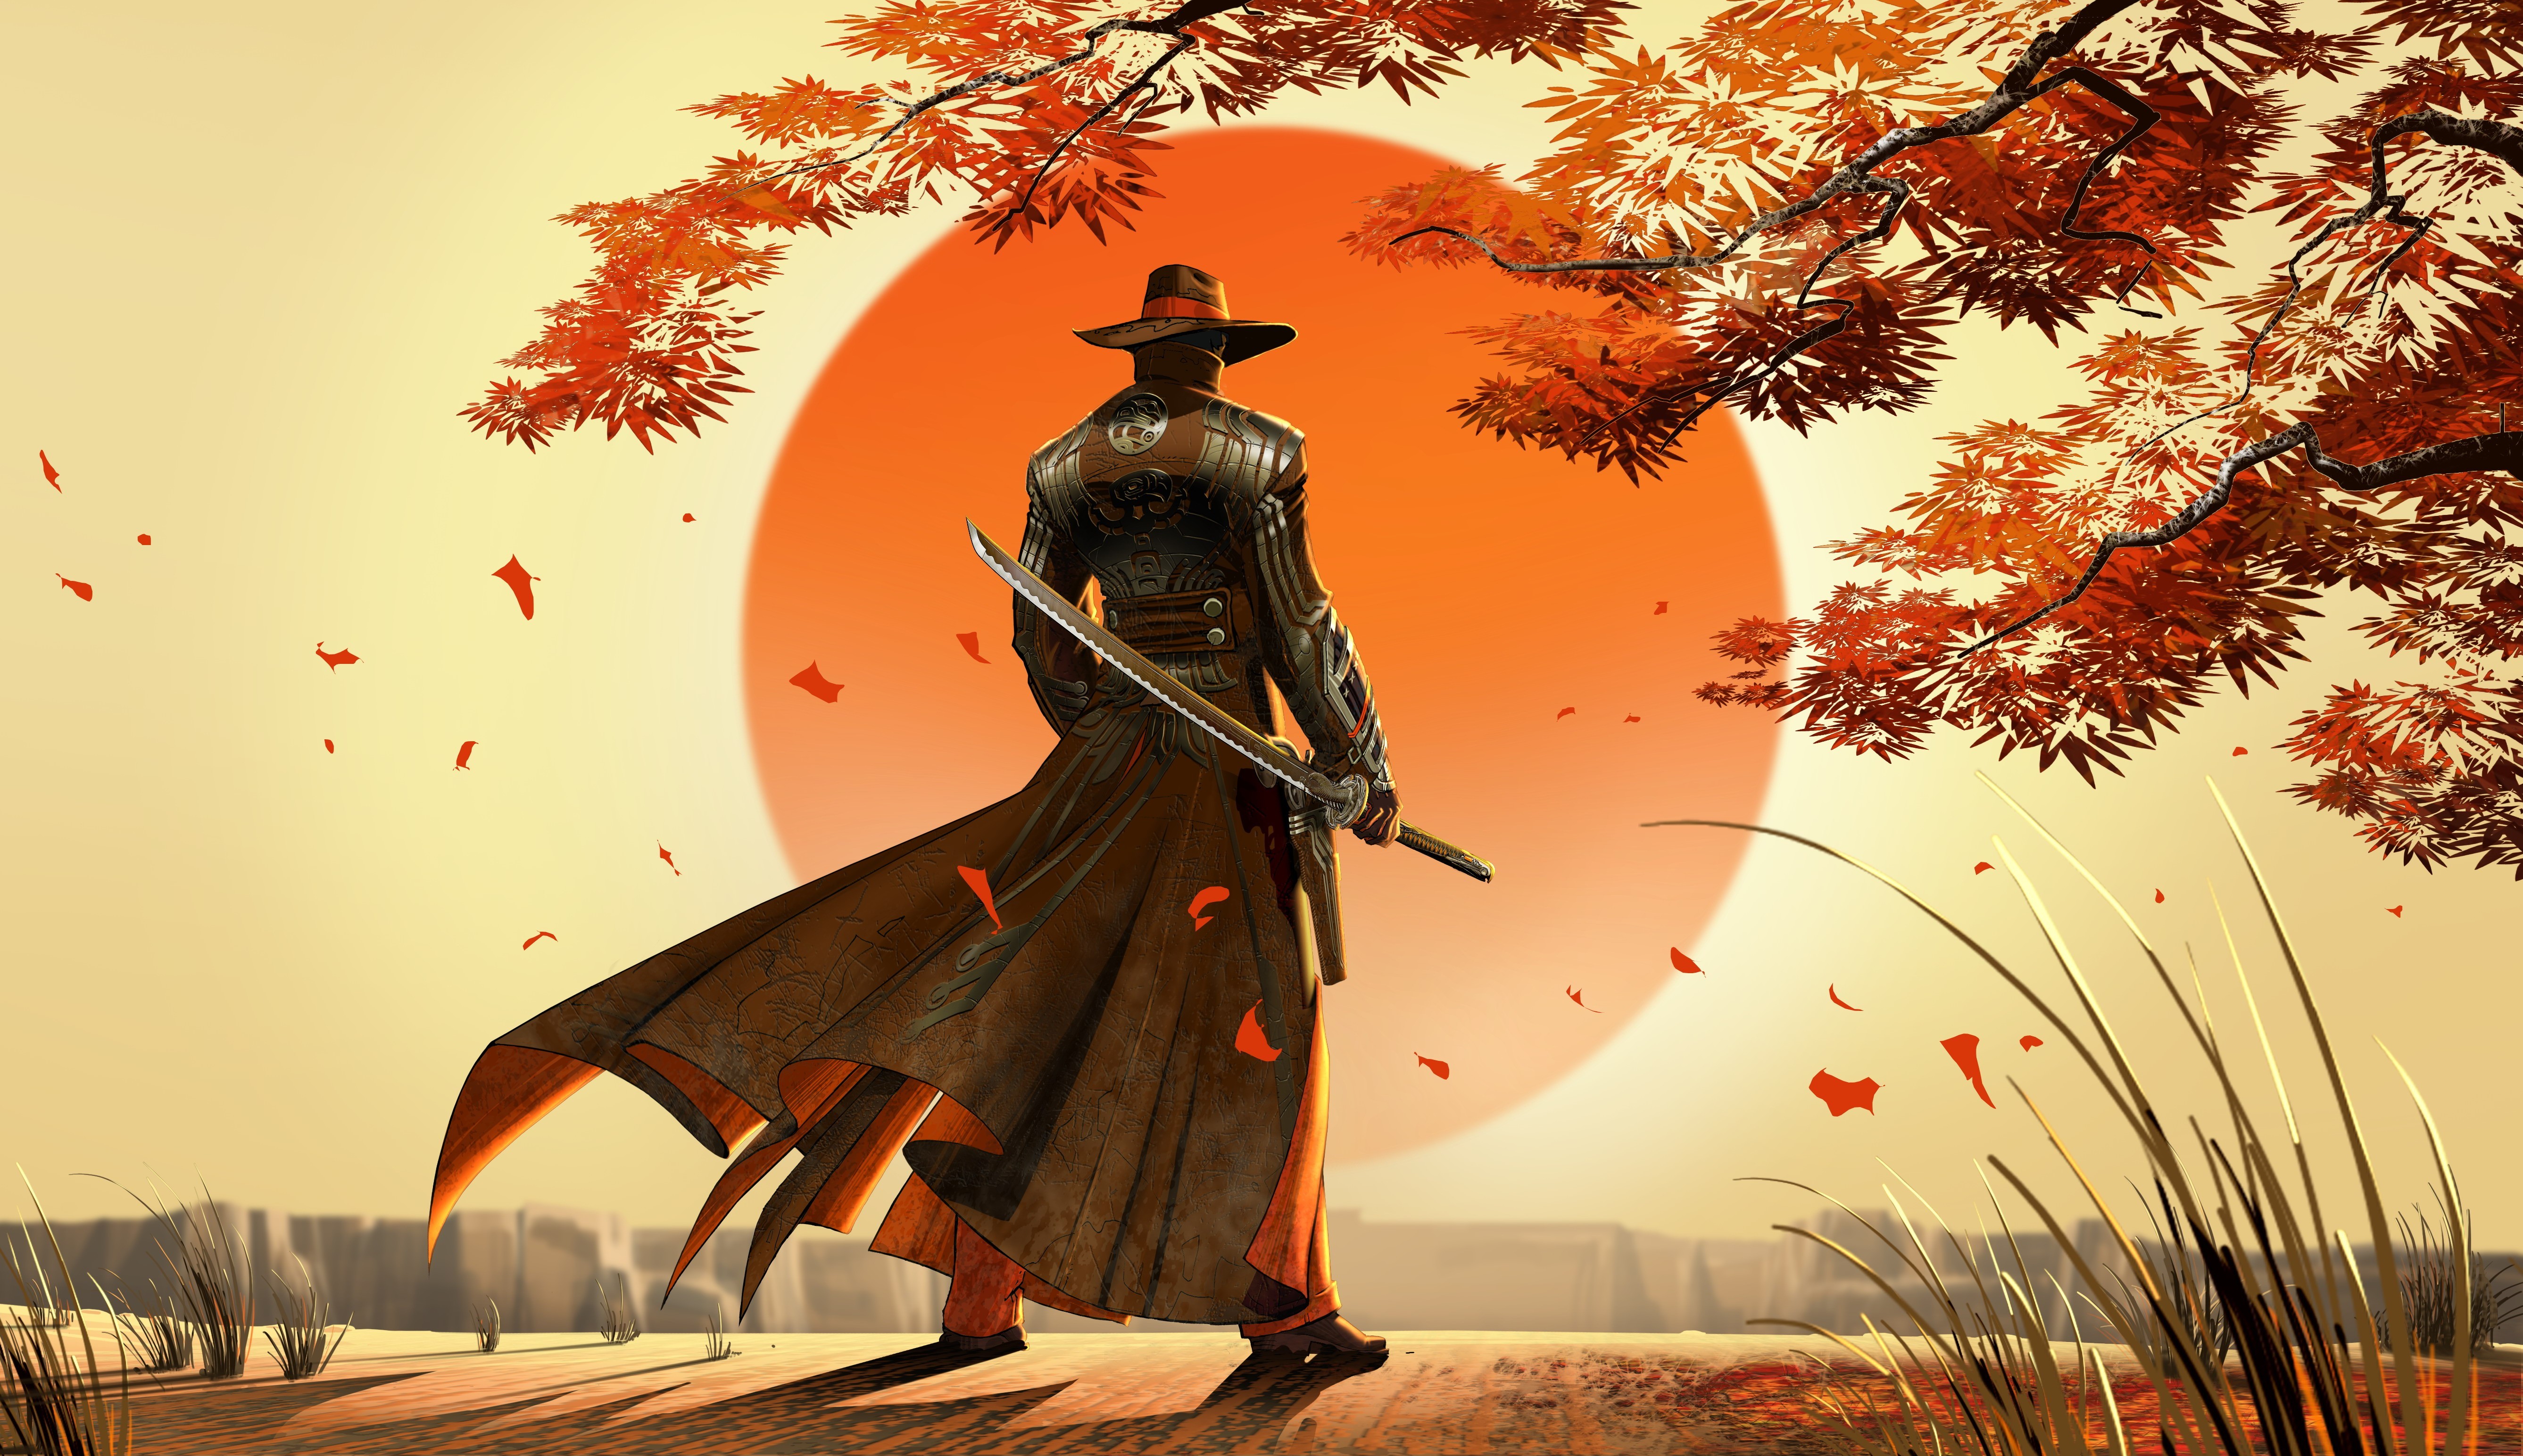 General 5350x3088 samurai artwork fantasy art cowboys Japan video games